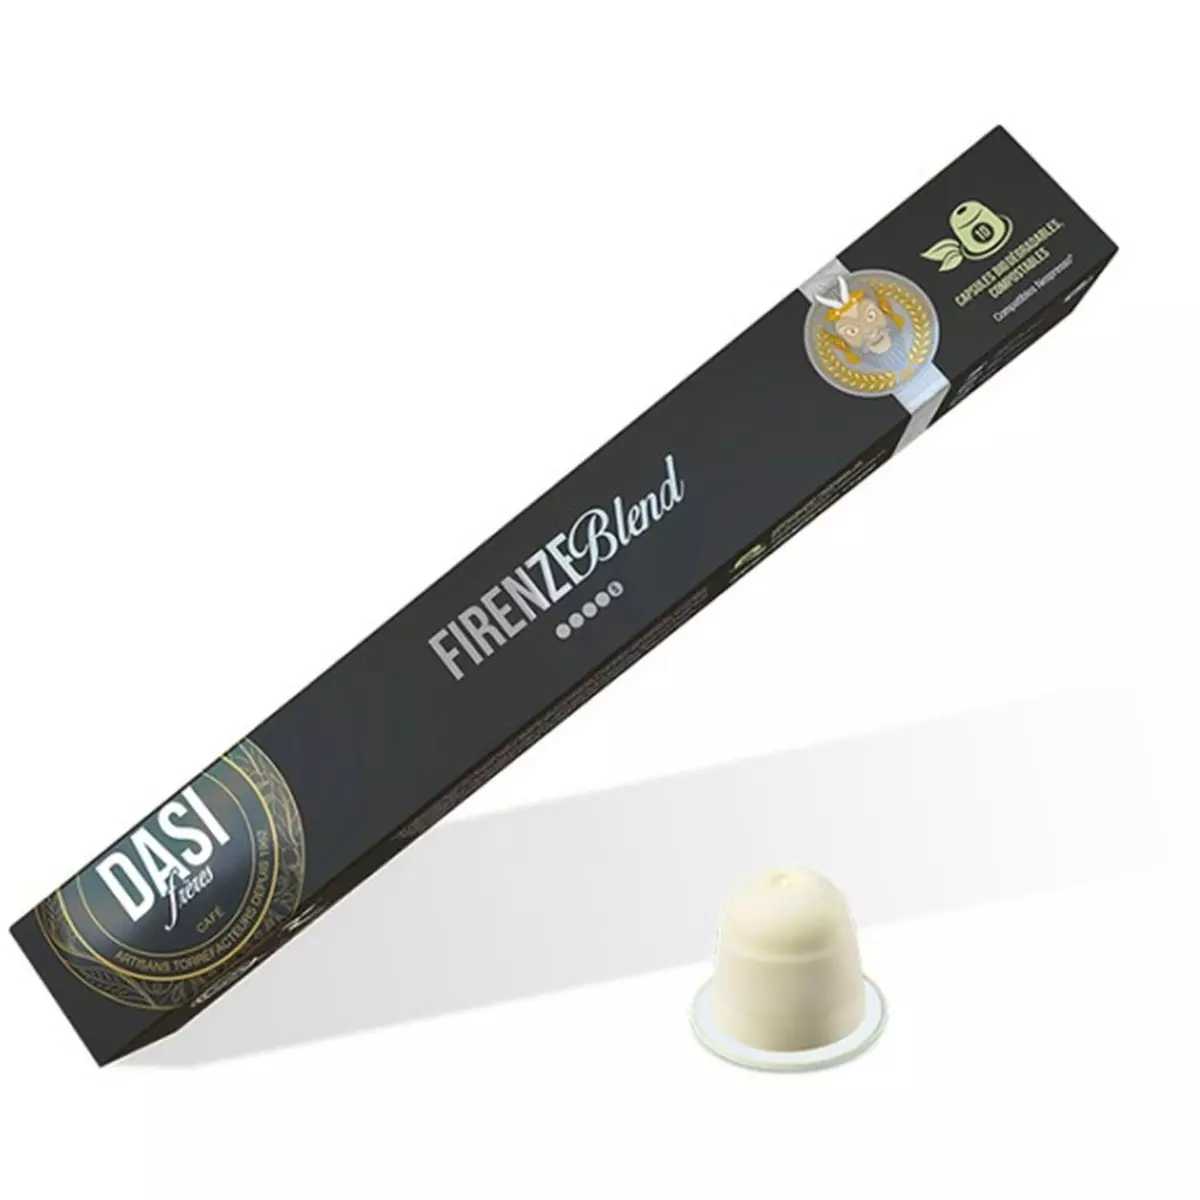 DASI FRERES Capsules de café firenze blend compatibles Nespresso 10 capsules 55g